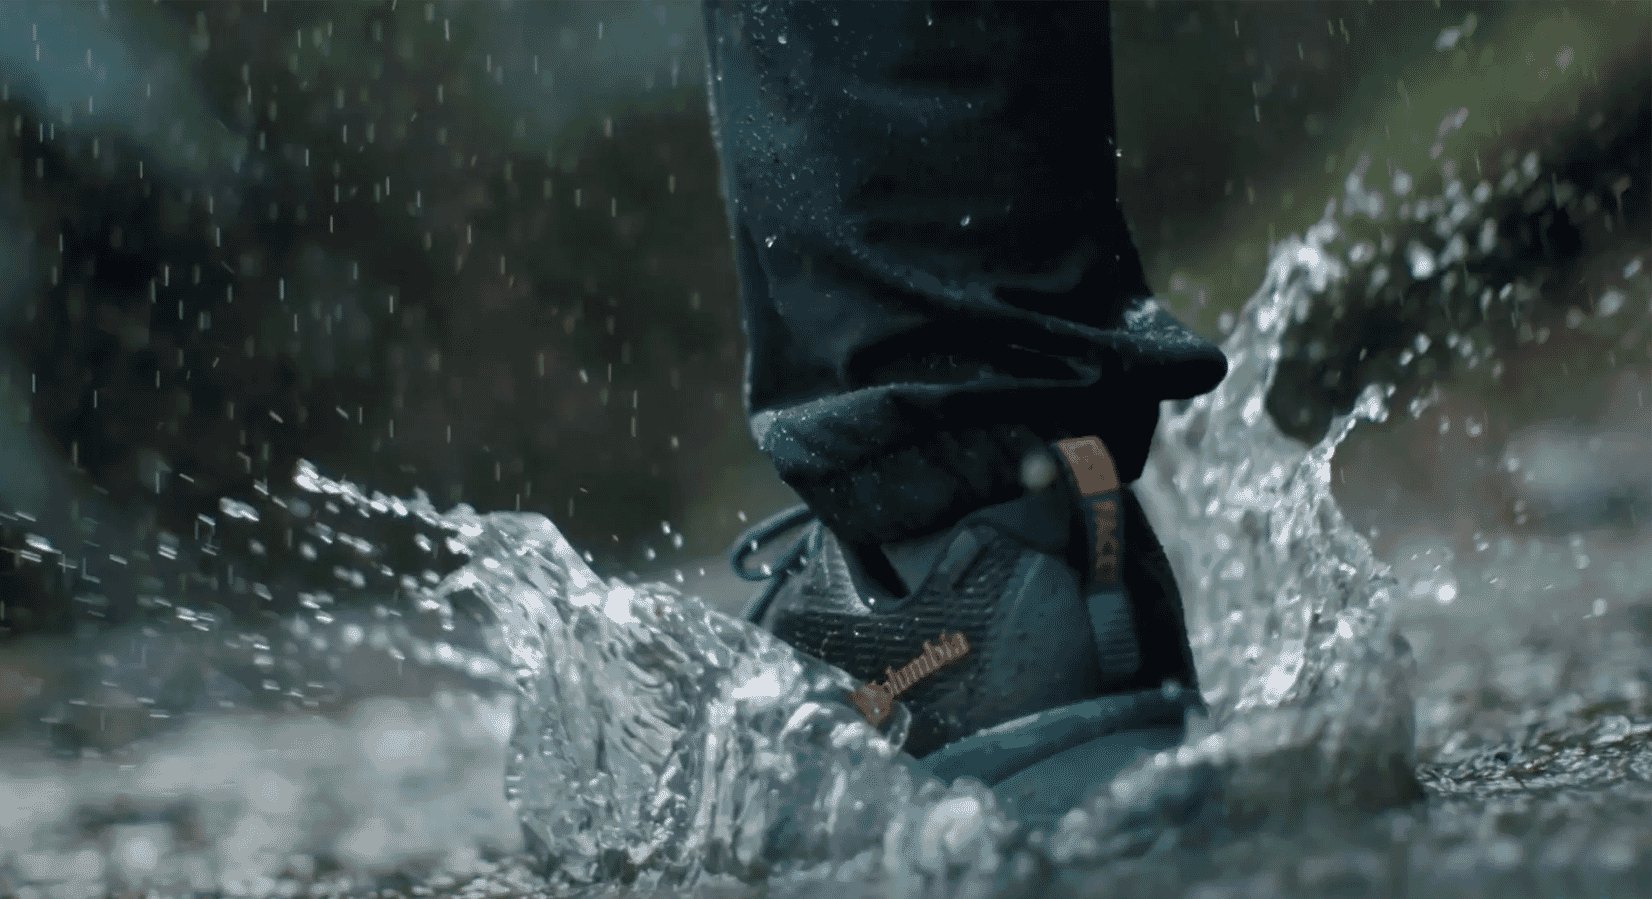 The Best Rain Gear - Waterproof and Windproof | Vessi Footwear